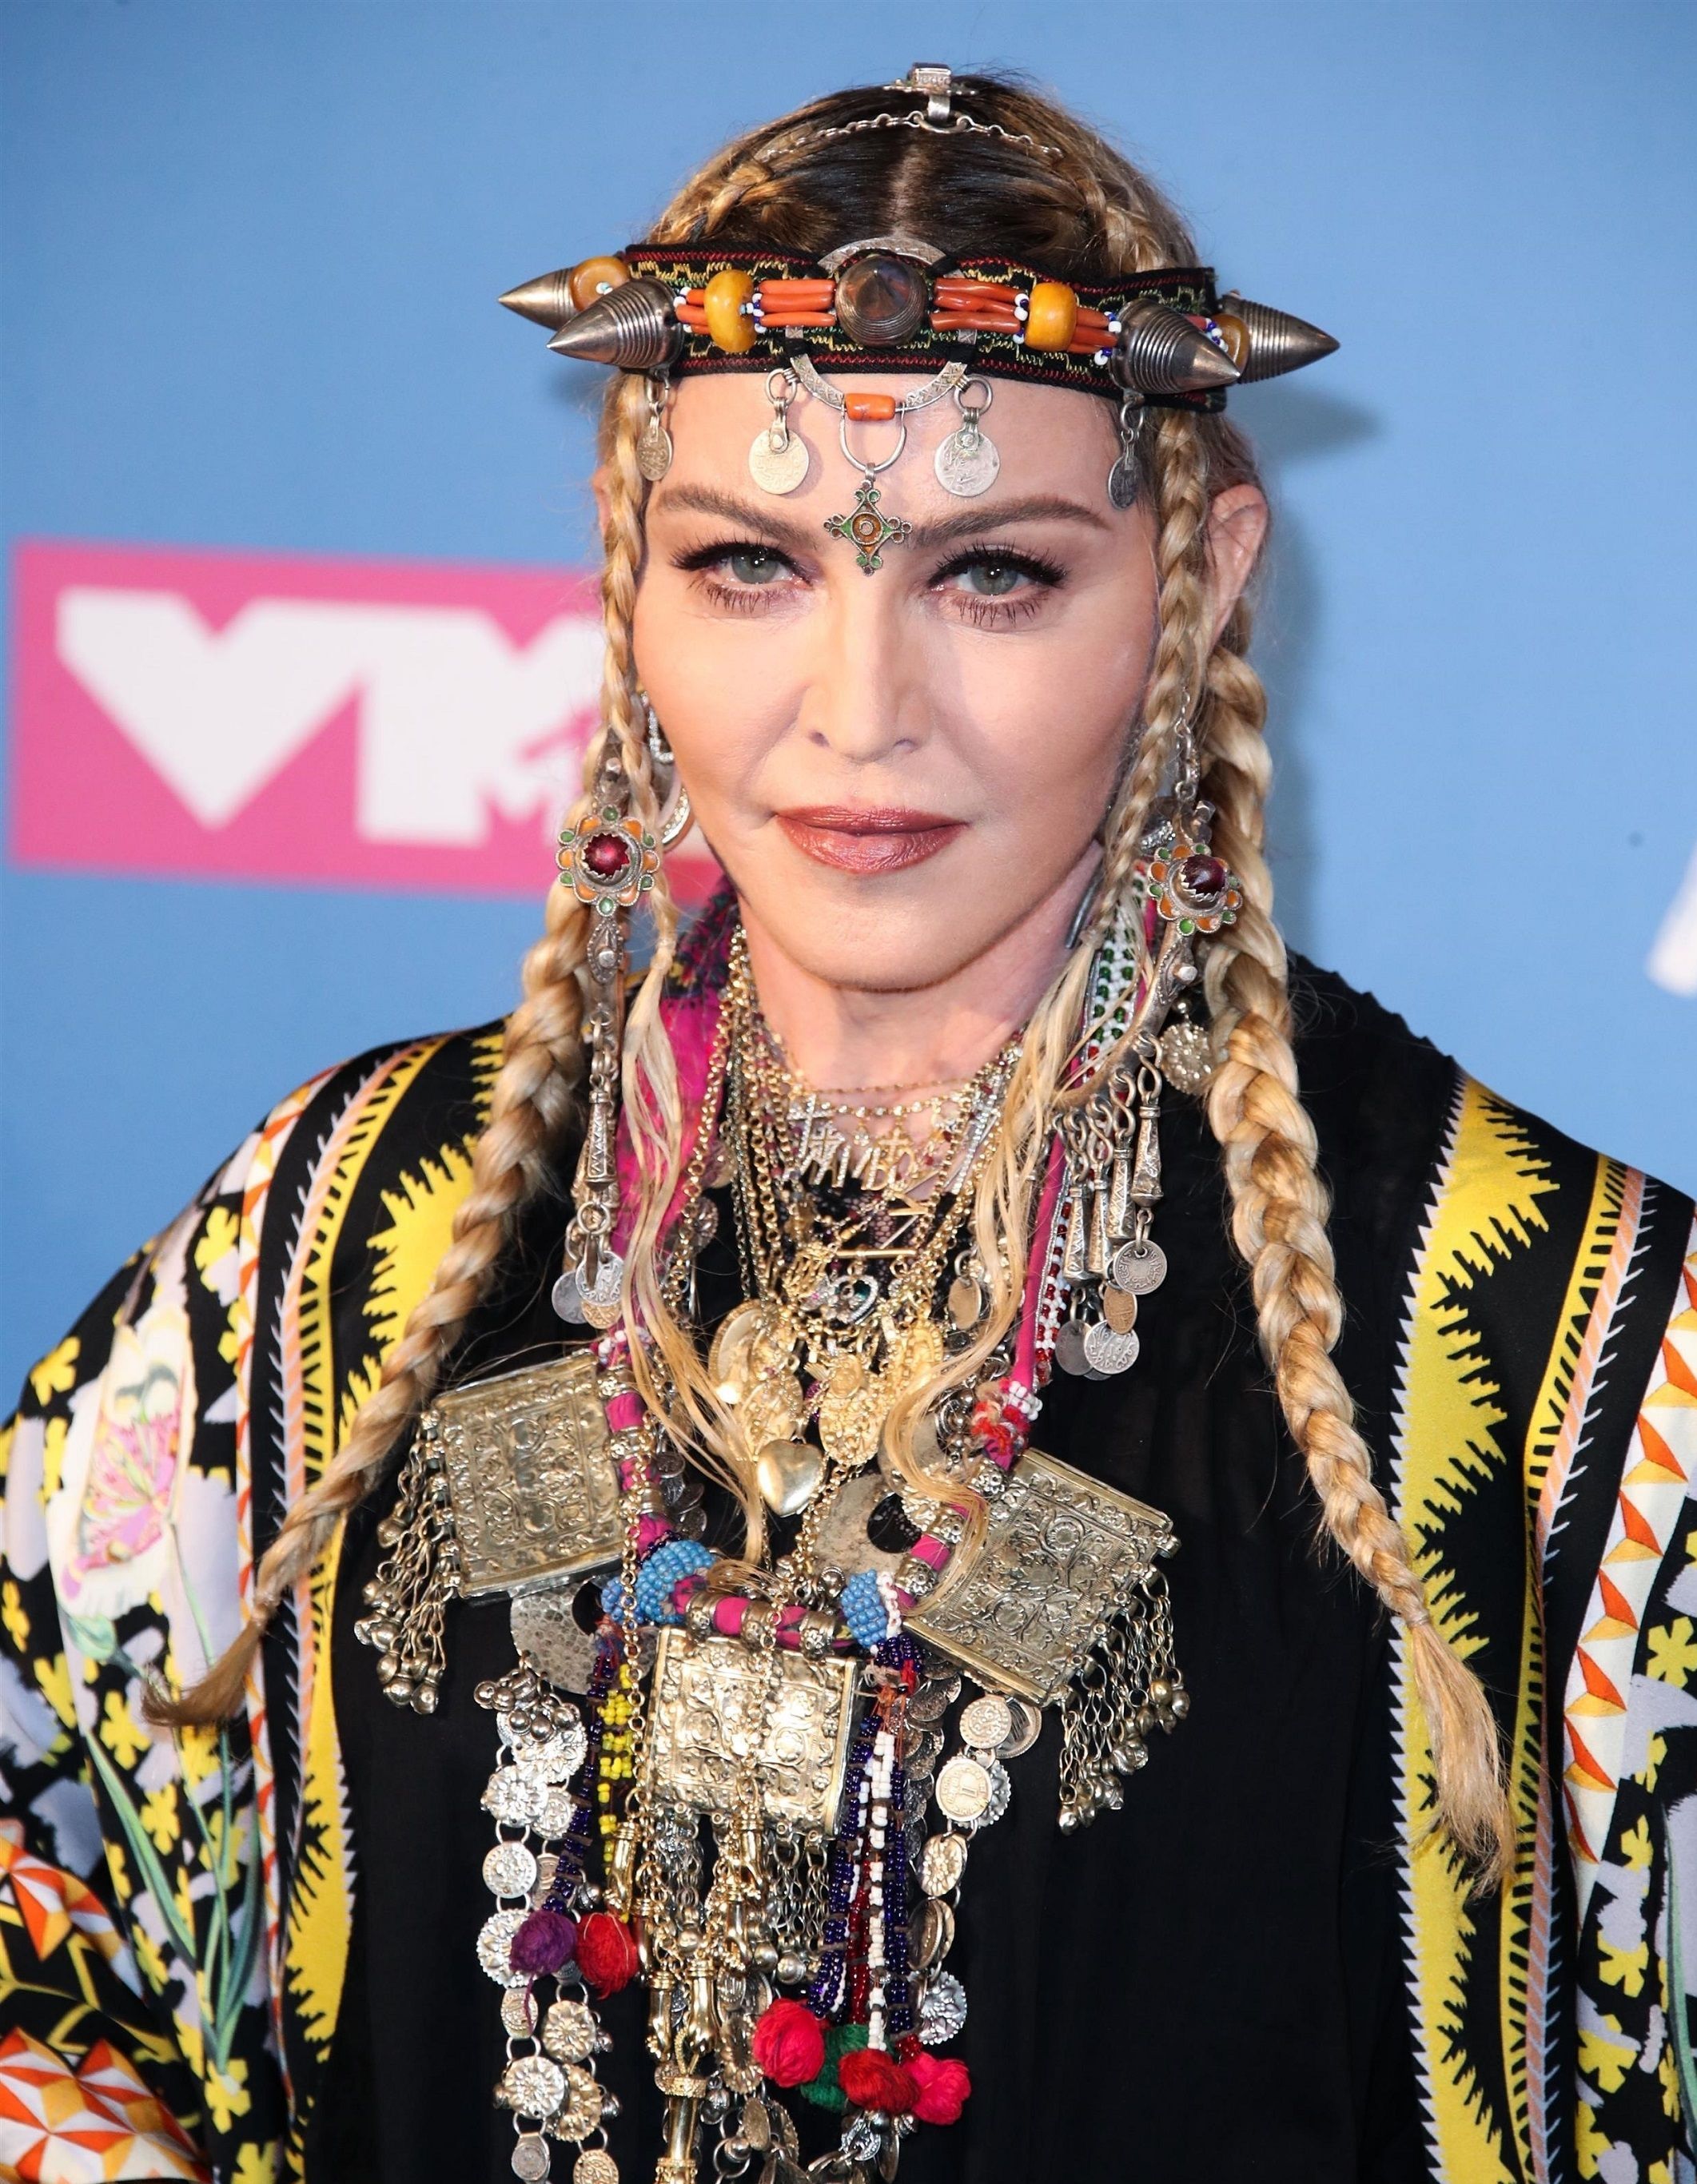 Madonna quitte le Portugal parce qu’on lui a refusé un caprice de star